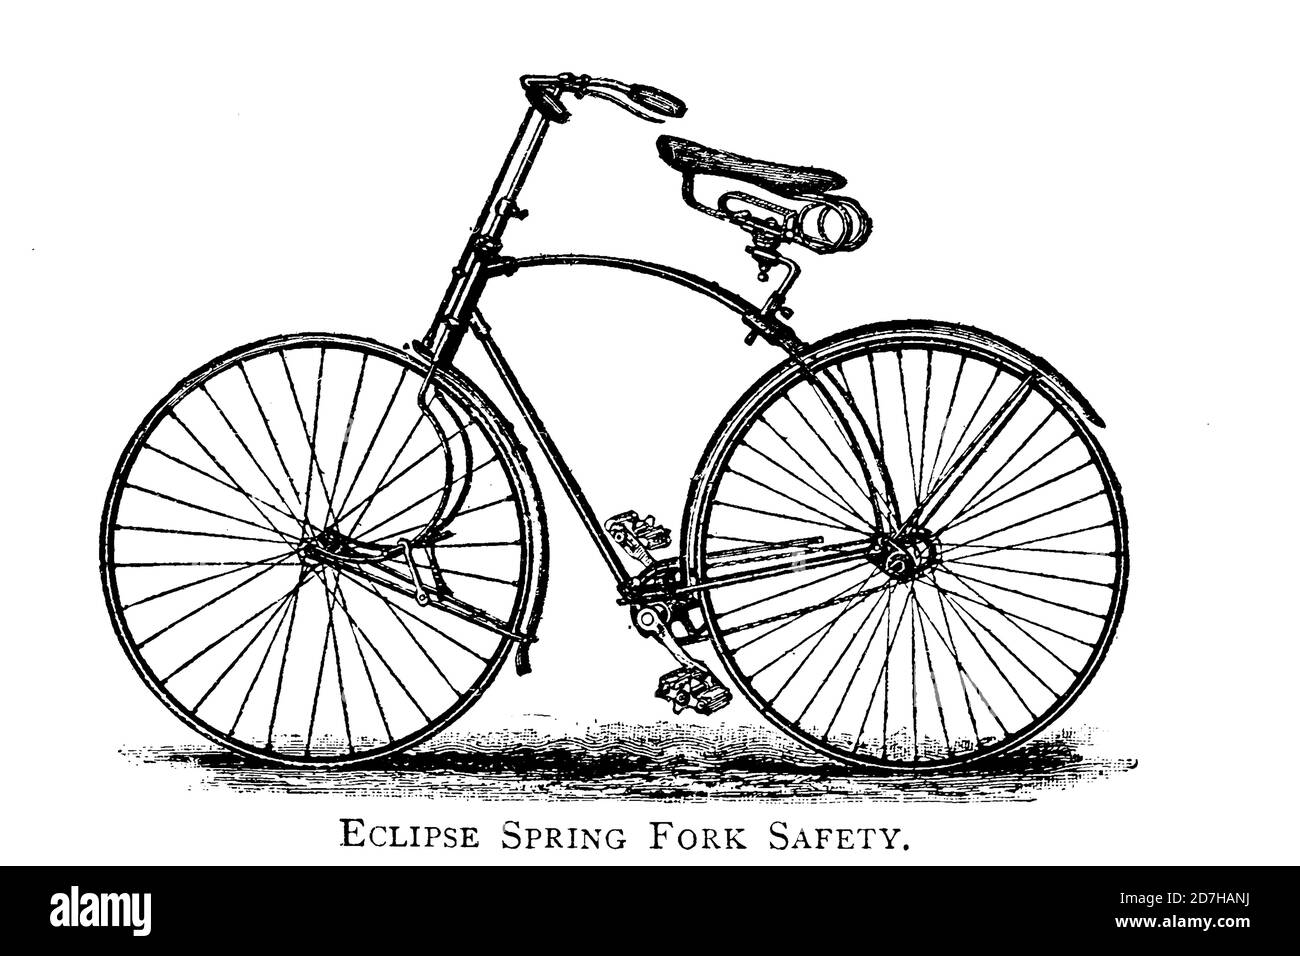 Eclipse Spring Fork vélo de sécurité de Wheeling, un manuel indispensable pour les cyclistes, avec plus de deux cents illustrations de porter, lu Banque D'Images